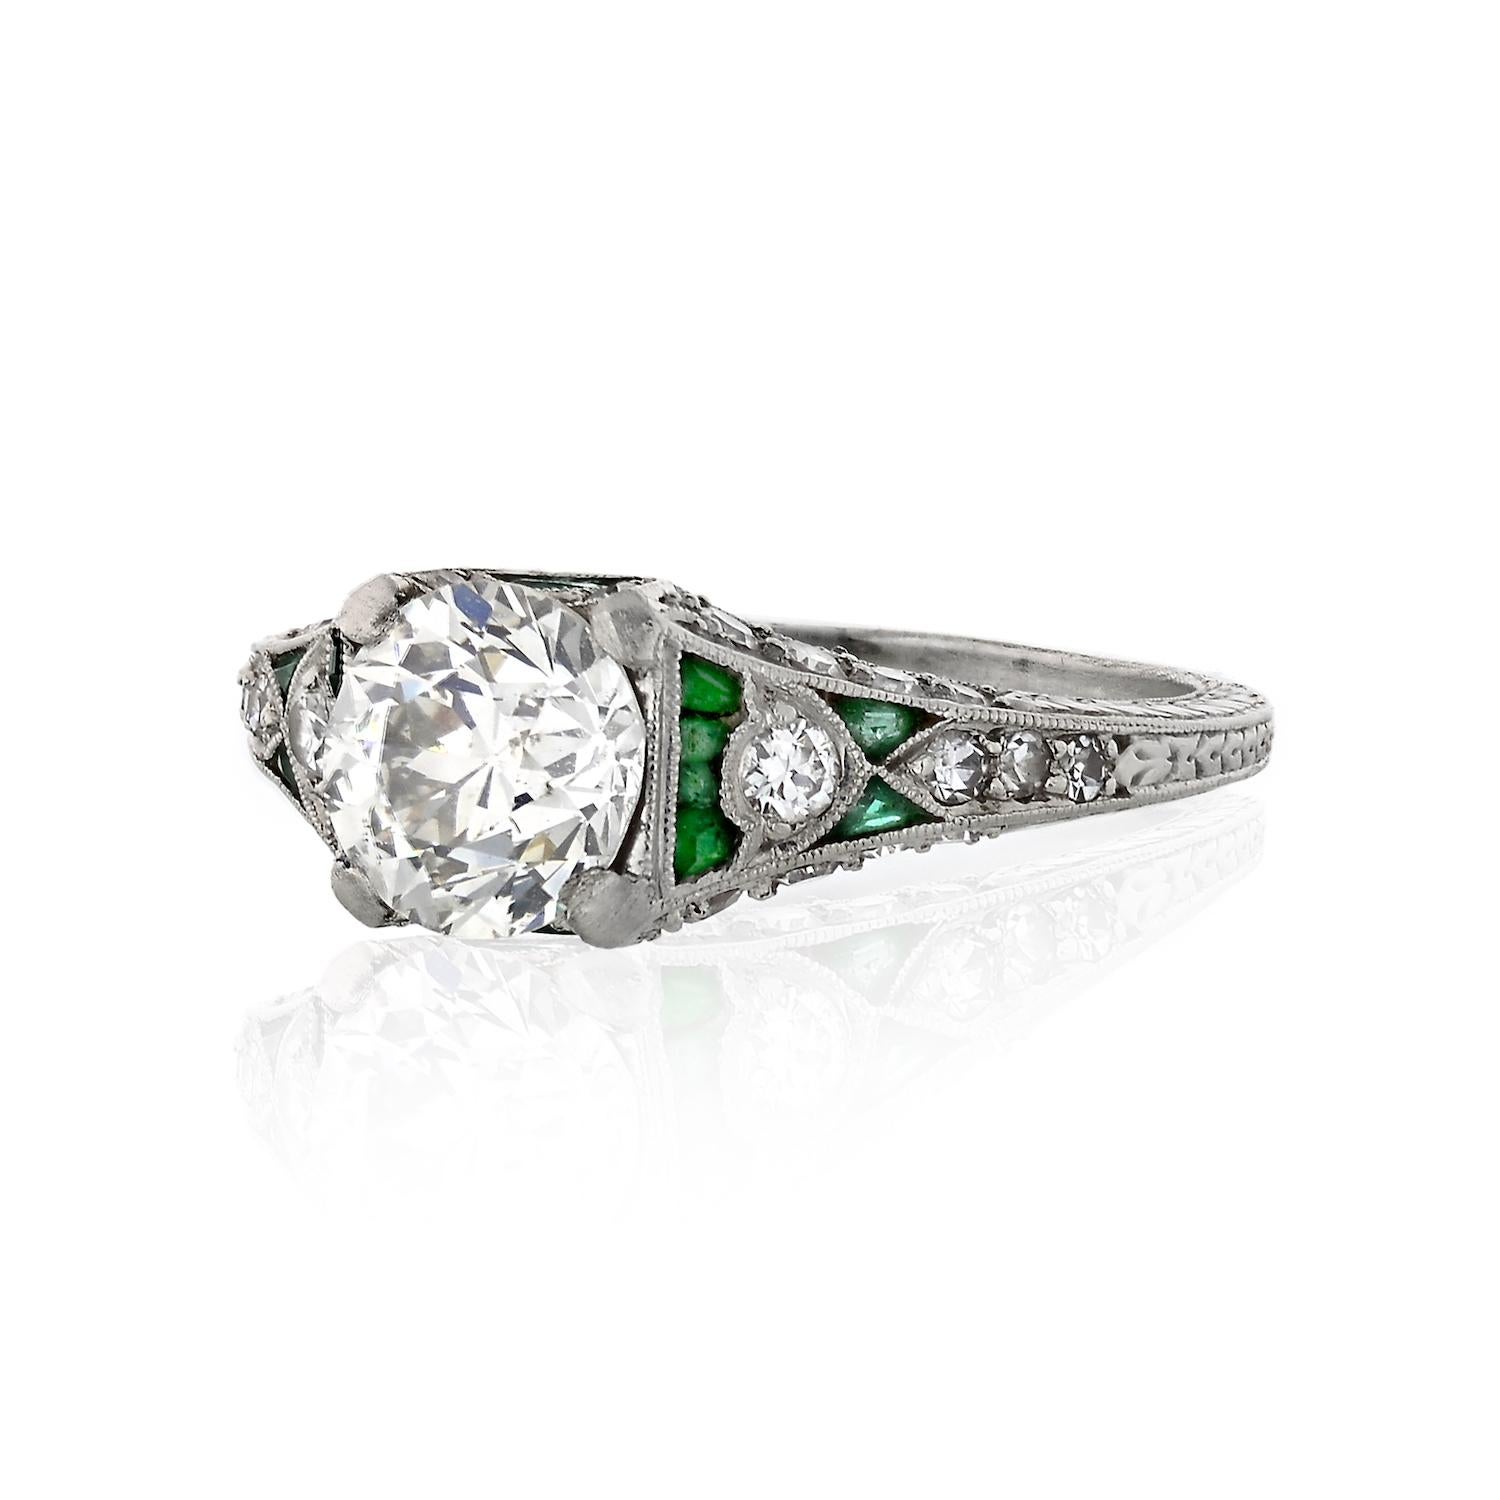 Round Cut 1.43 Carat Circular Brilliant Cut Diamond Platinum Art Deco Engagement Ring